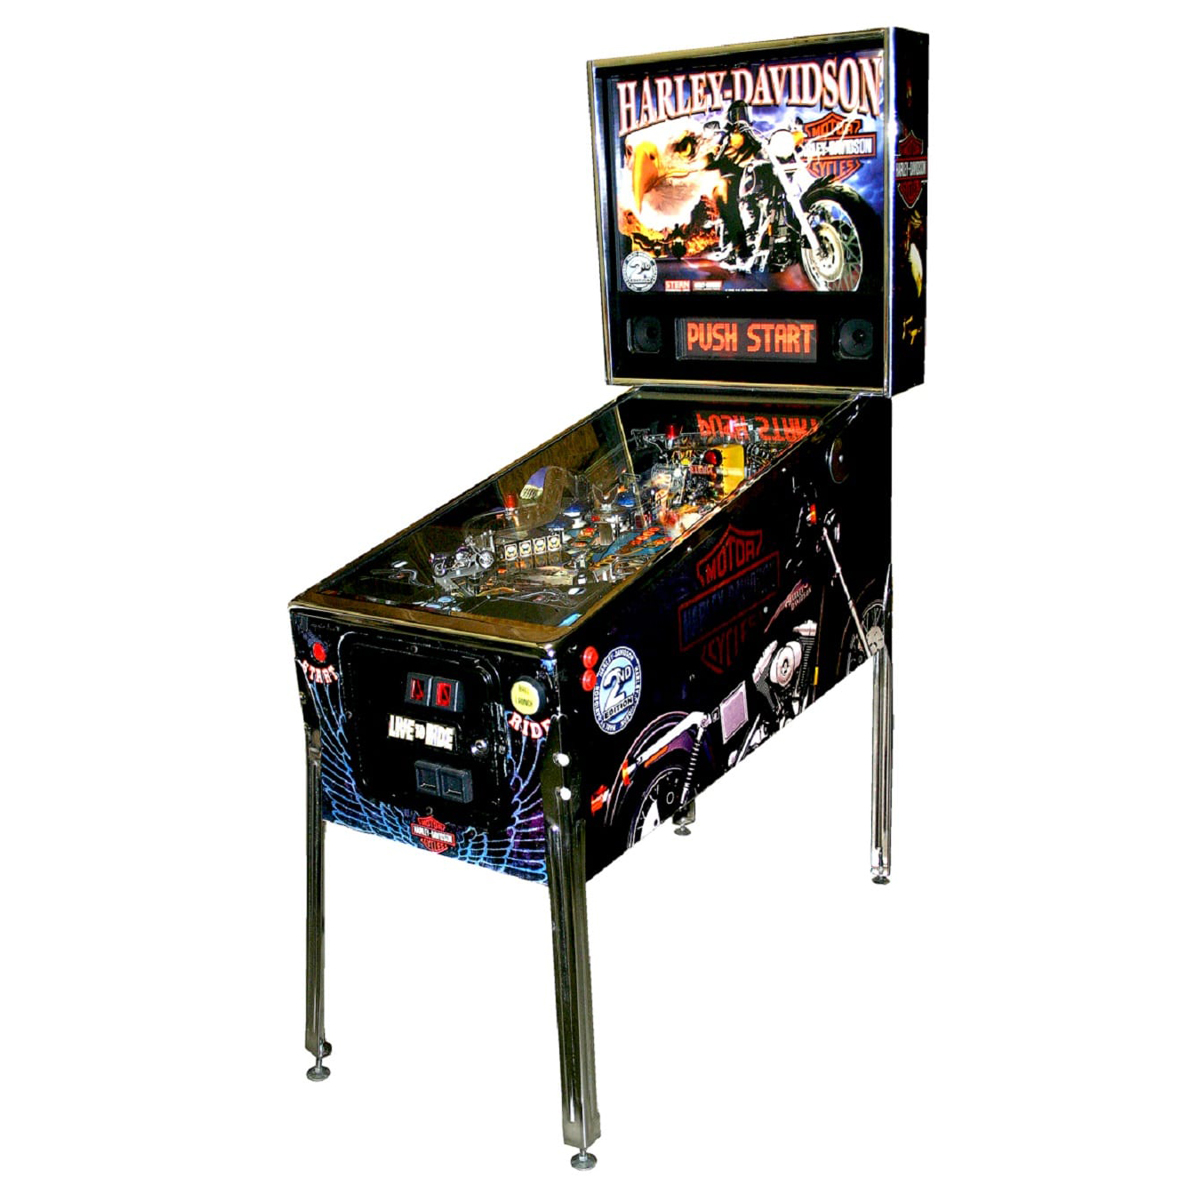 Harley Davidson Pinball 1 - Big Buck Pinball Machine